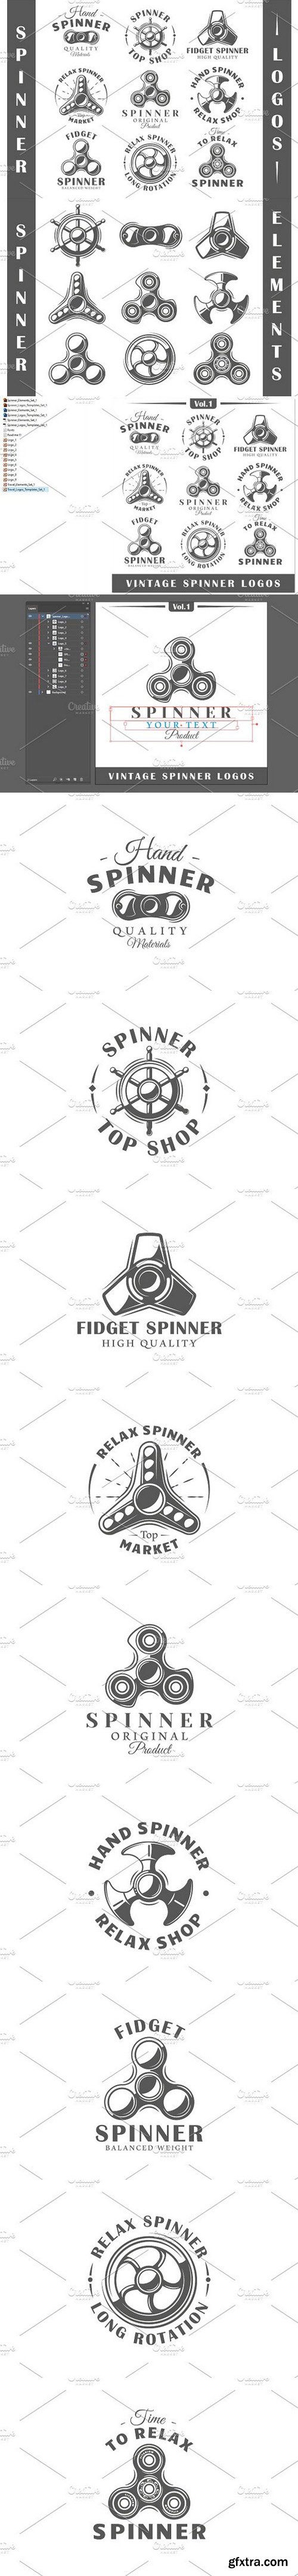 CM - 9 Spinner Logos Templates Vol.1 1643541